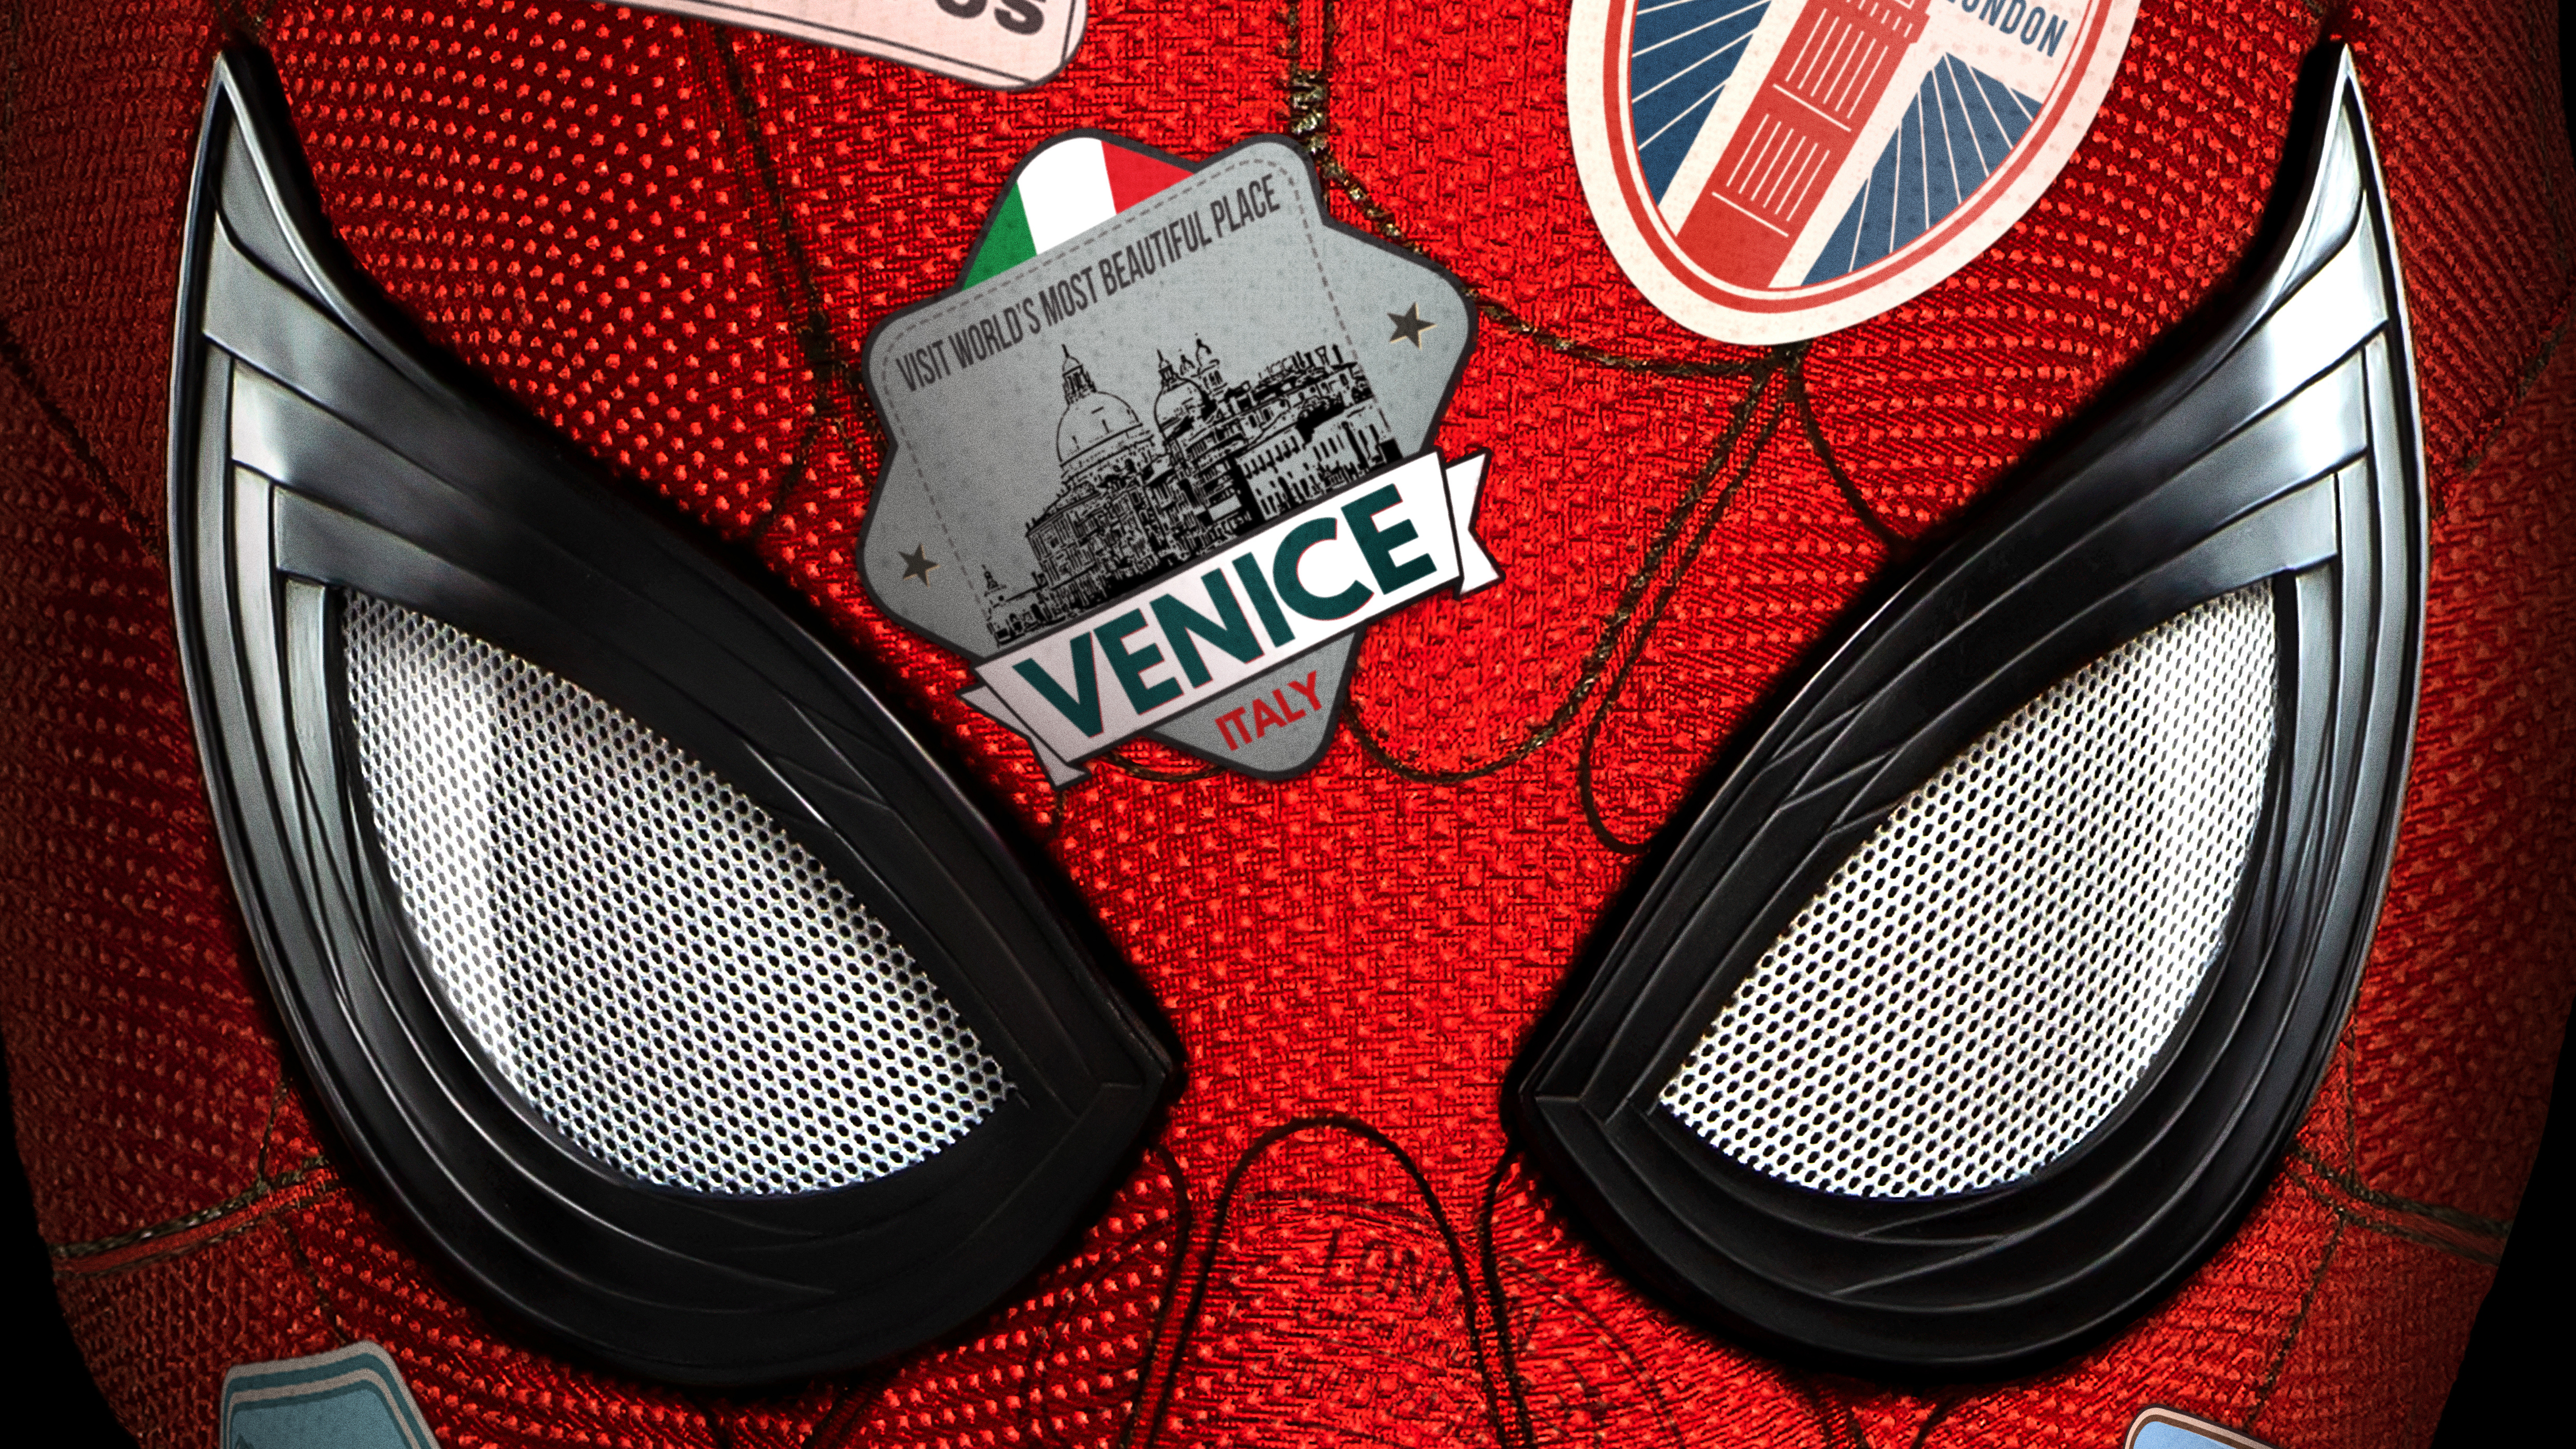 Meilleurs fonds d'écran Spider Man: Far From Home pour l'écran du téléphone